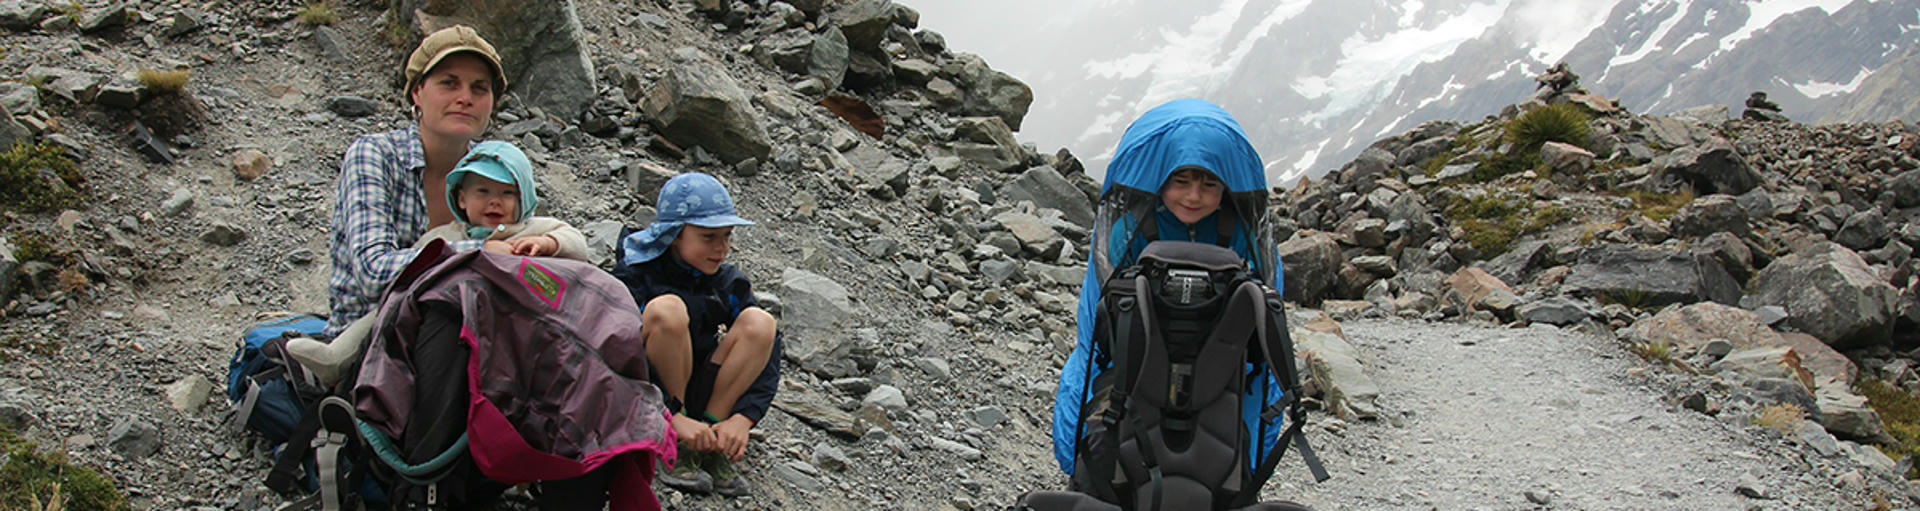 Drei Kinder beim Wandern in Neuseeland